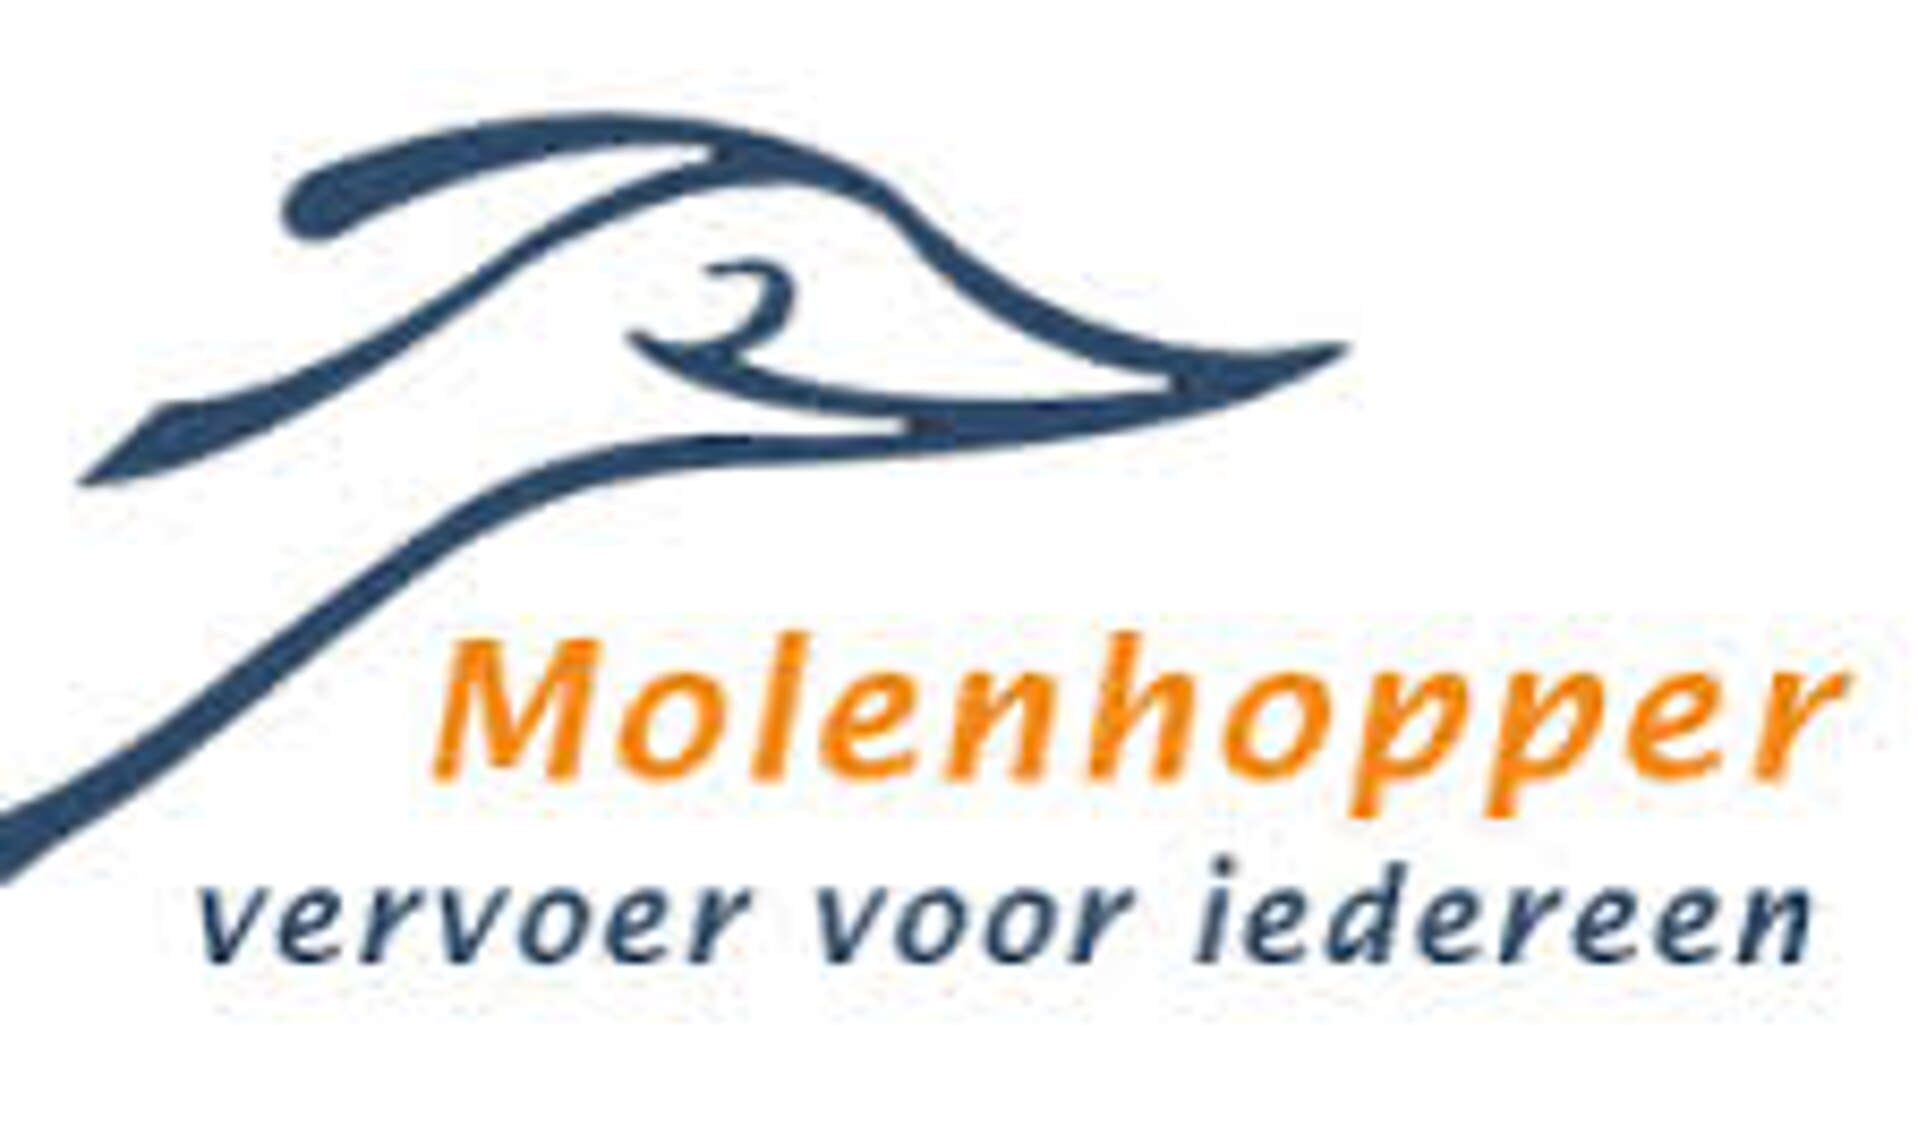 • Het logo van de Molenhopper.